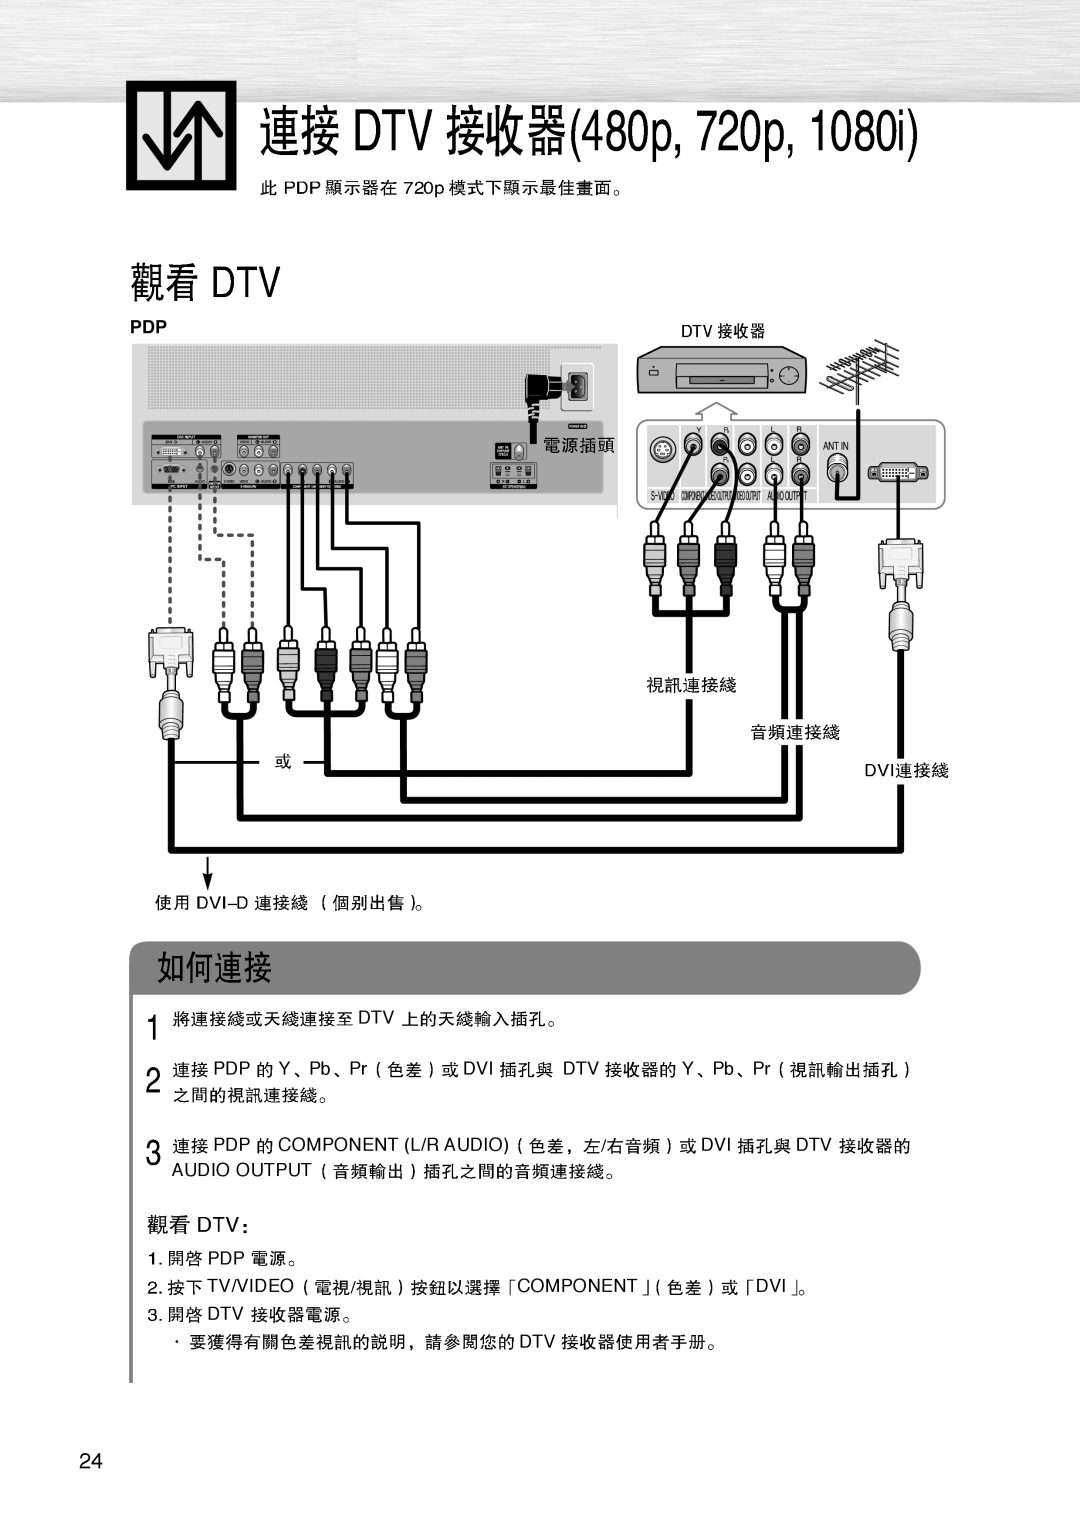 Samsung PL-42D4S DTV PDP YPbPr DVI DTV YPbPr, Pdp Component L/R Audio Dvi Dtv Audio Output Pdp, Tv/Videocomponentdvi Dtv 